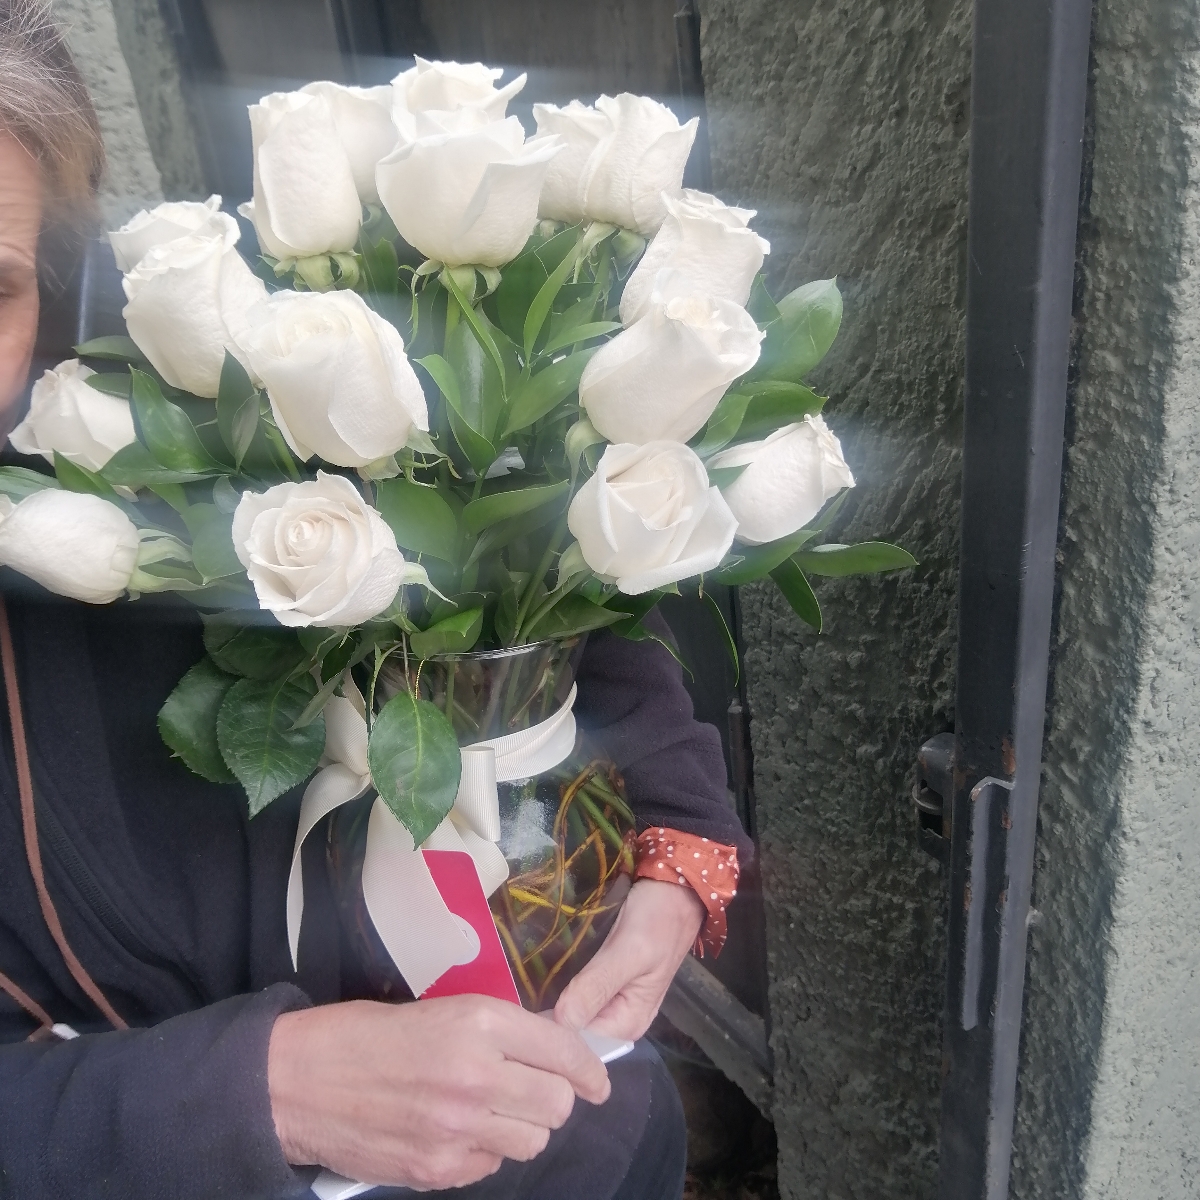 Arreglo floral en florero ánfora con 24 rosas blancas - Pedido 243324